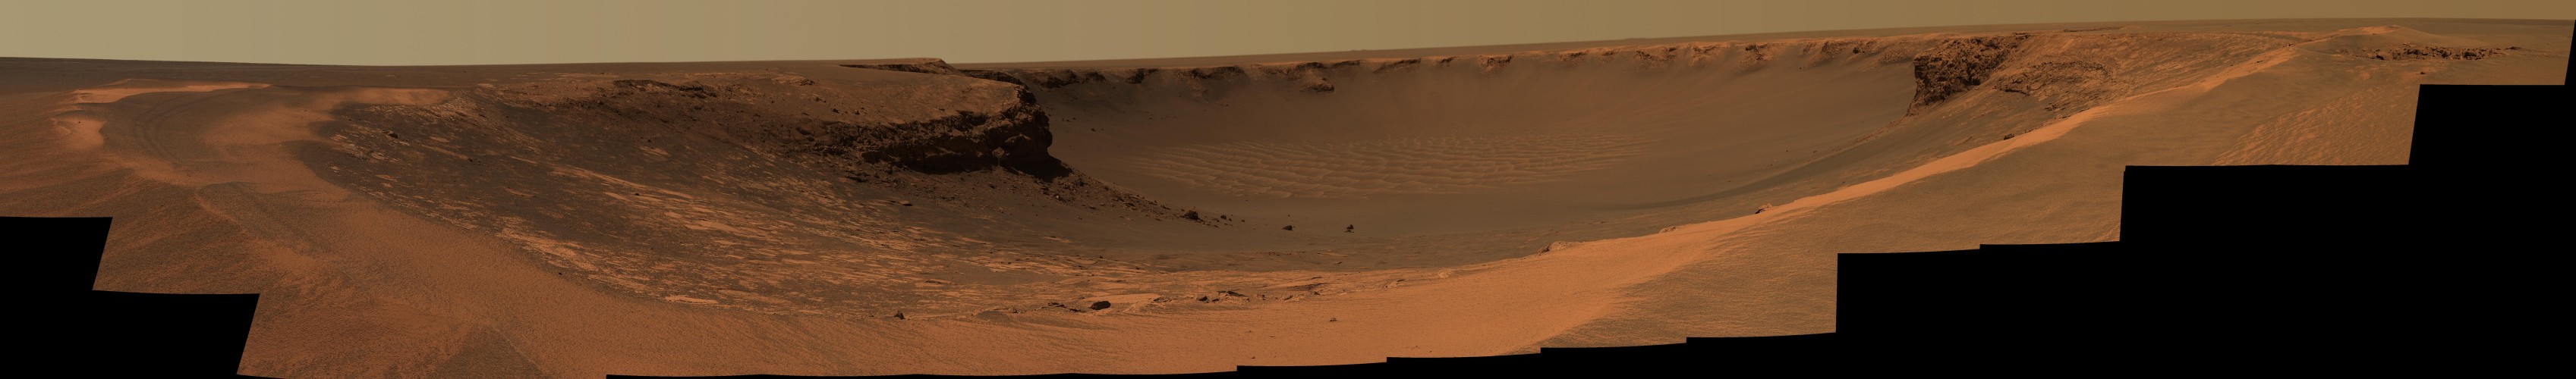 Cráter Victoria en Marte